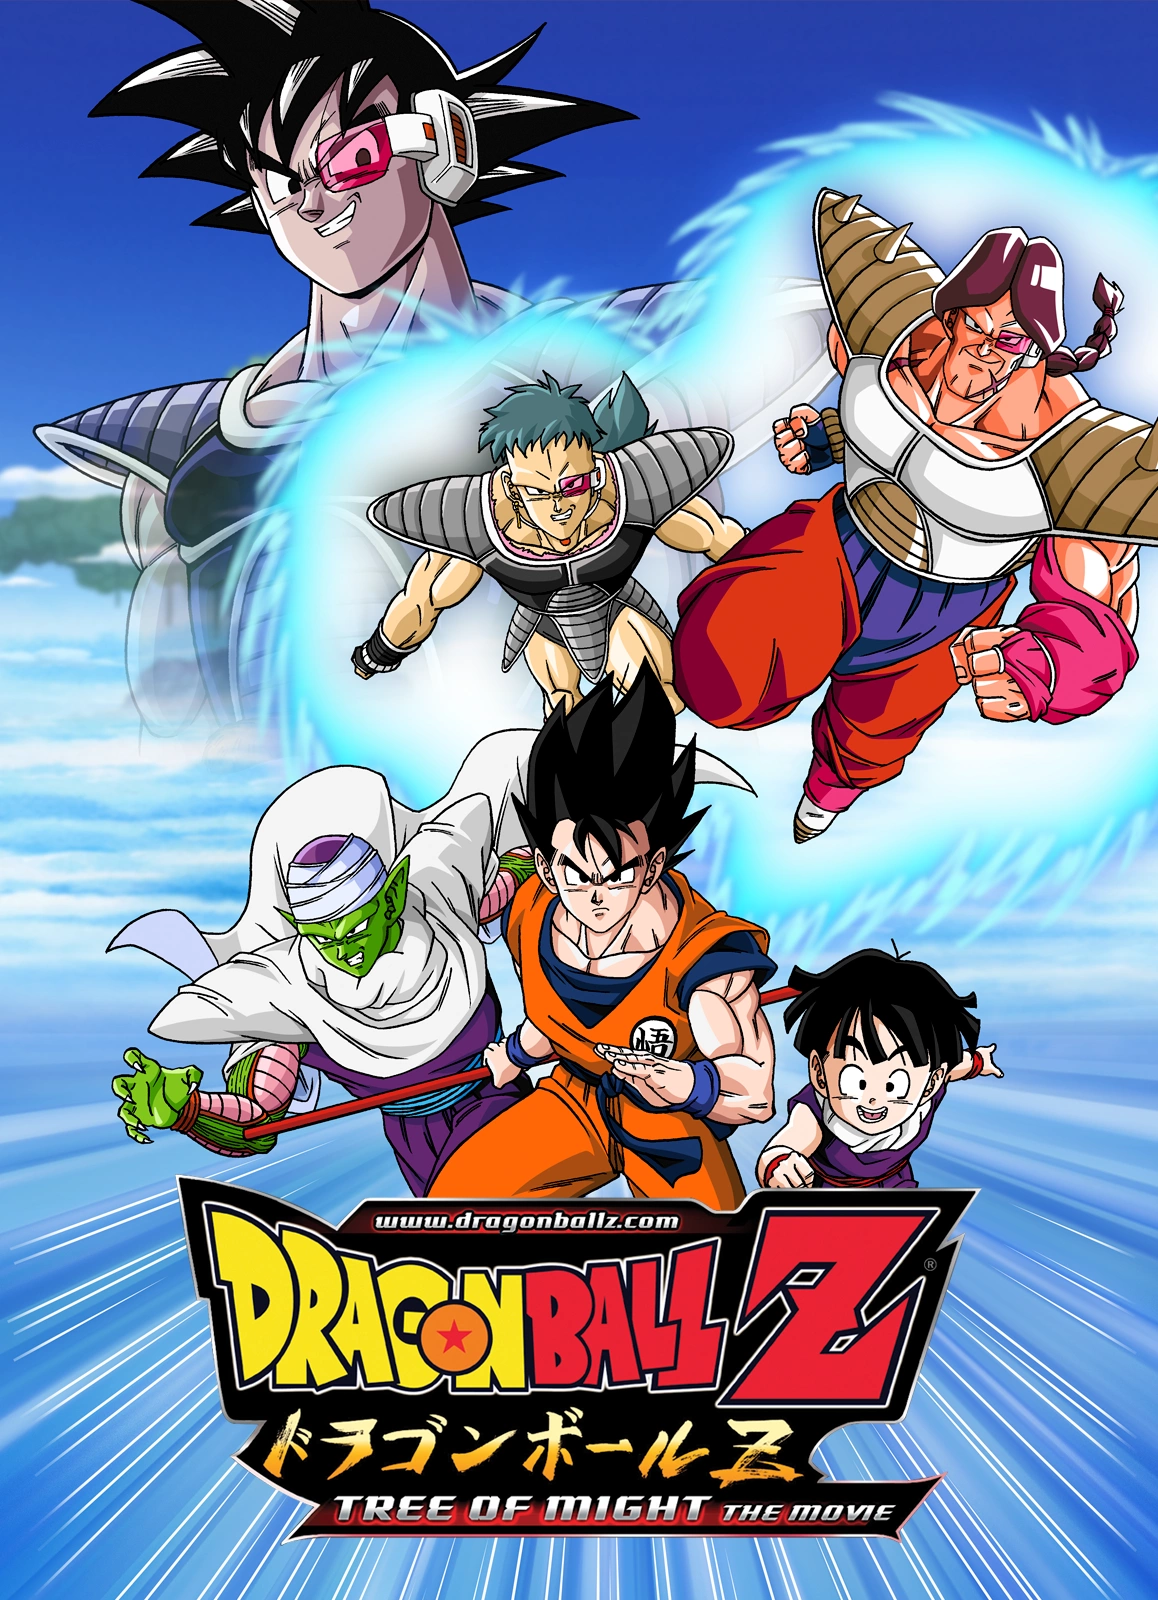 Crunchyroll anuncia lançamento de 13 filmes de Dragon Ball Z